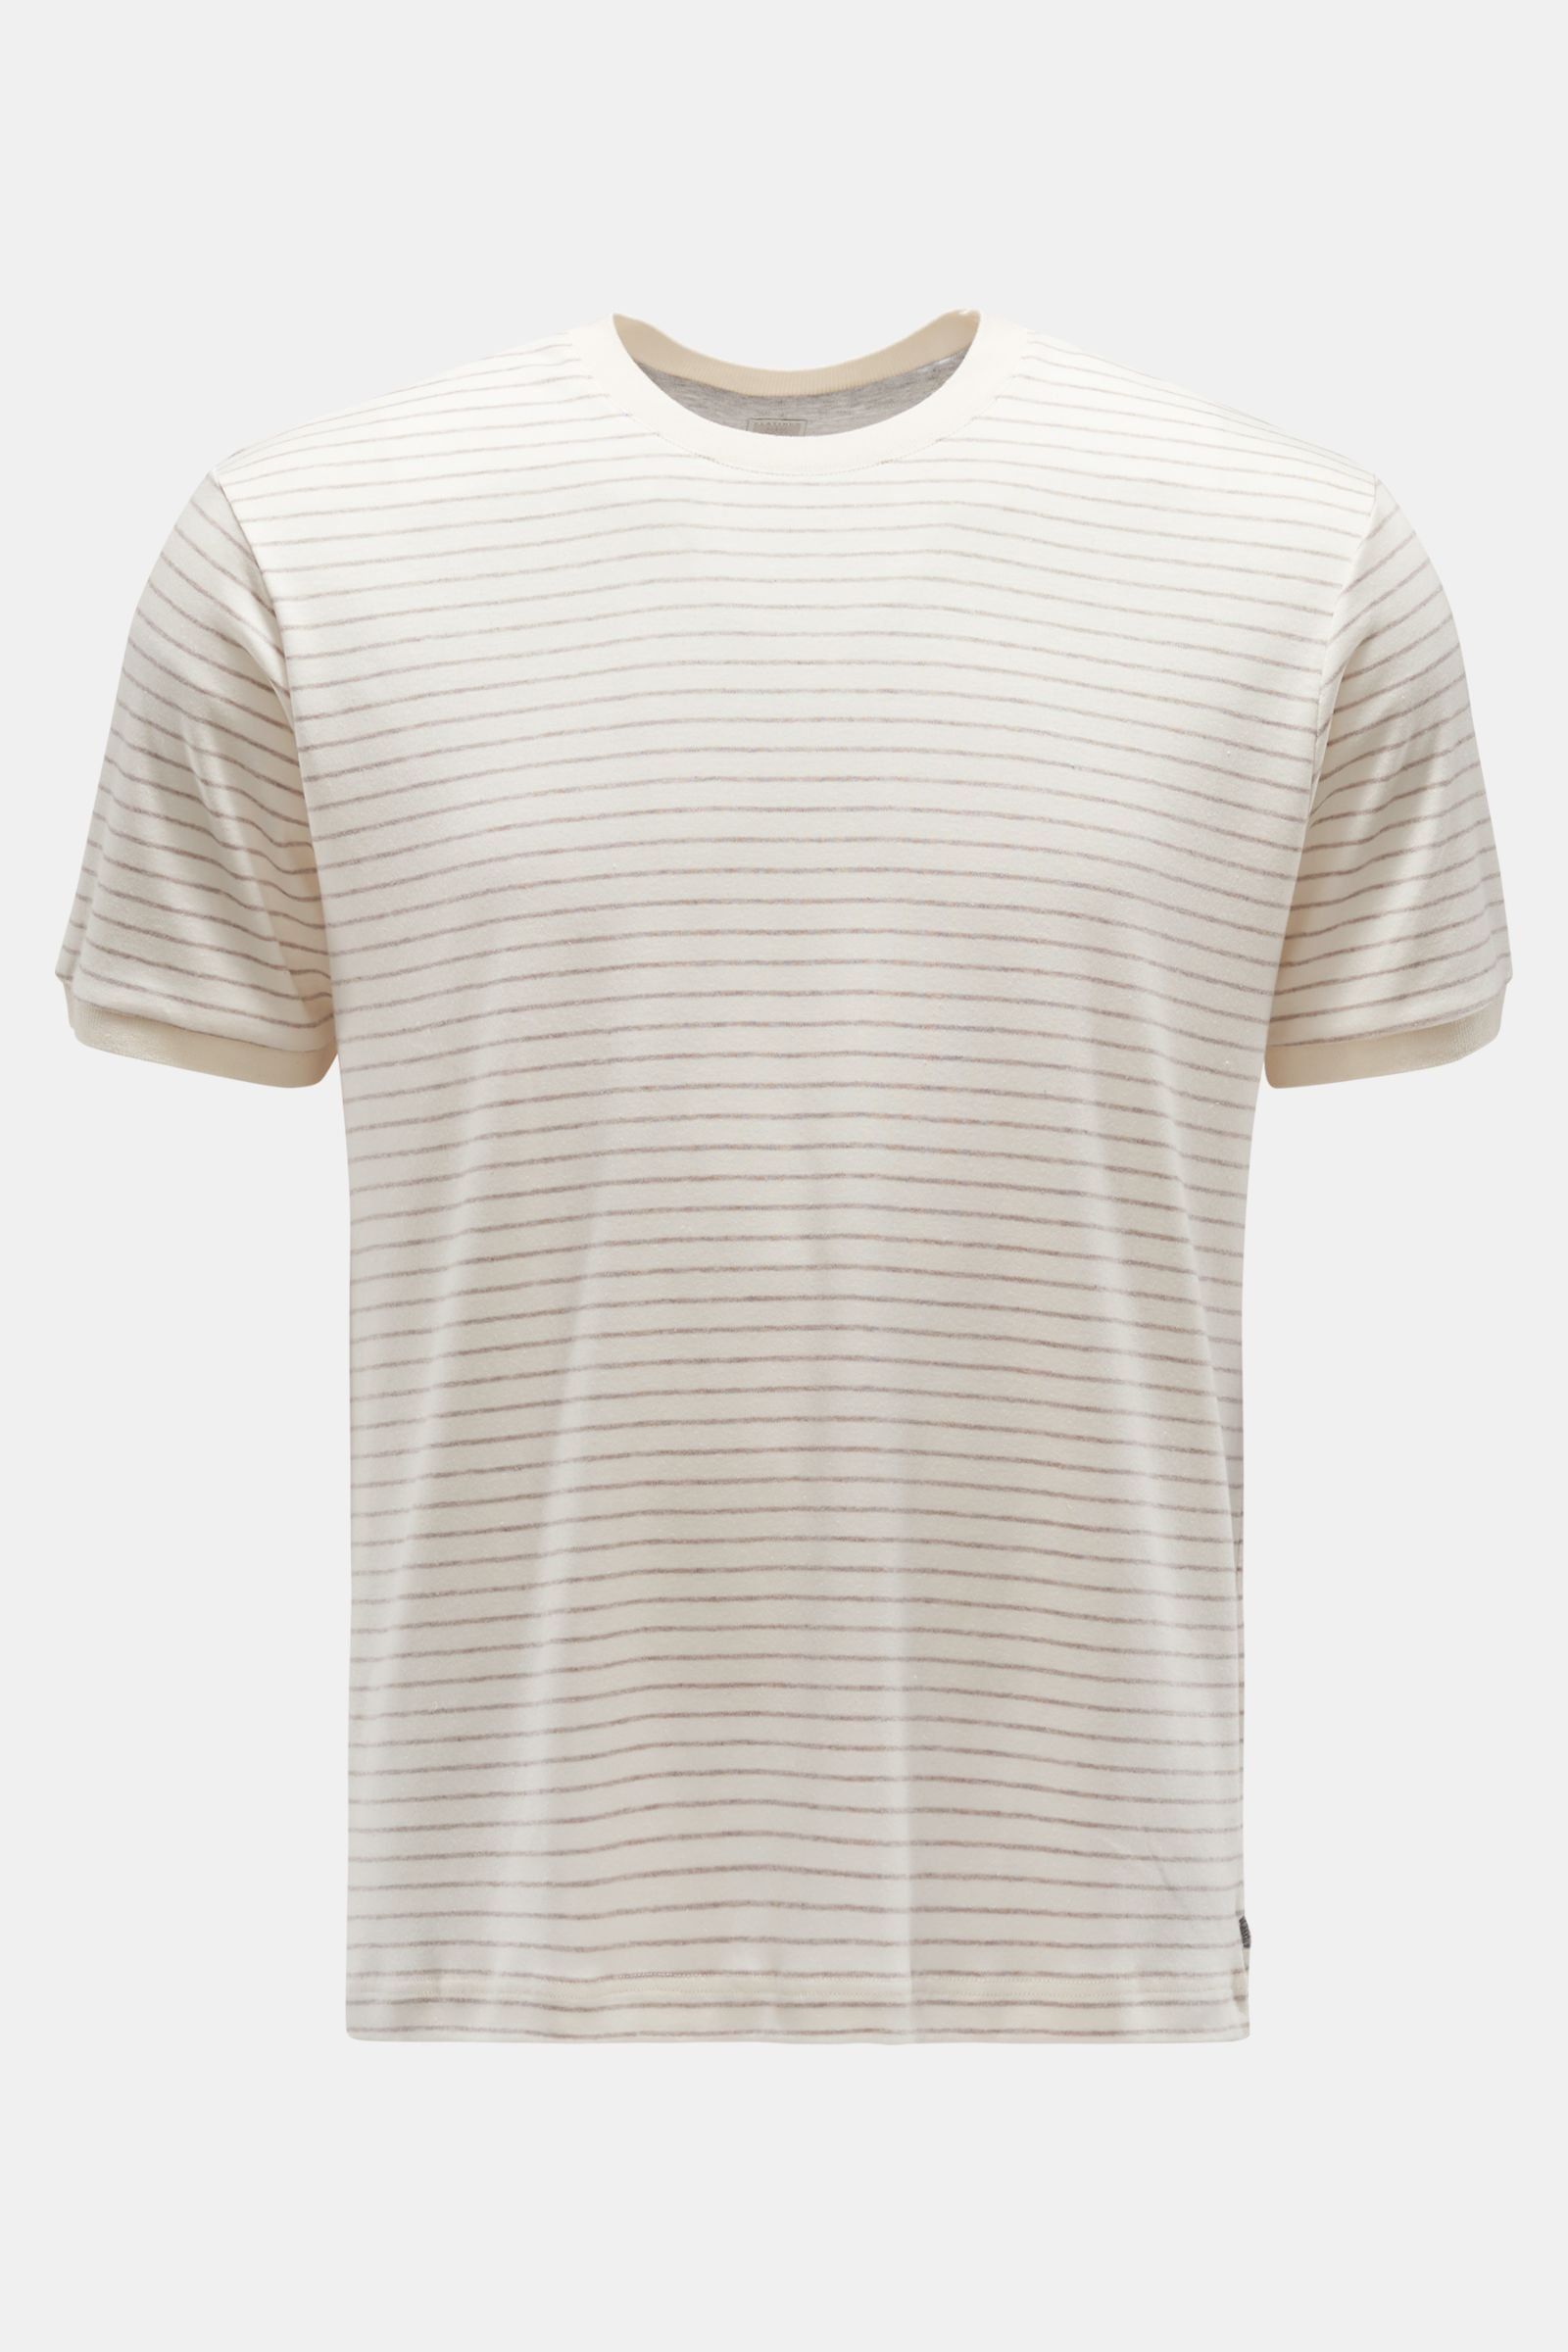 Rundhals-T-Shirt creme/graubraun gestreift